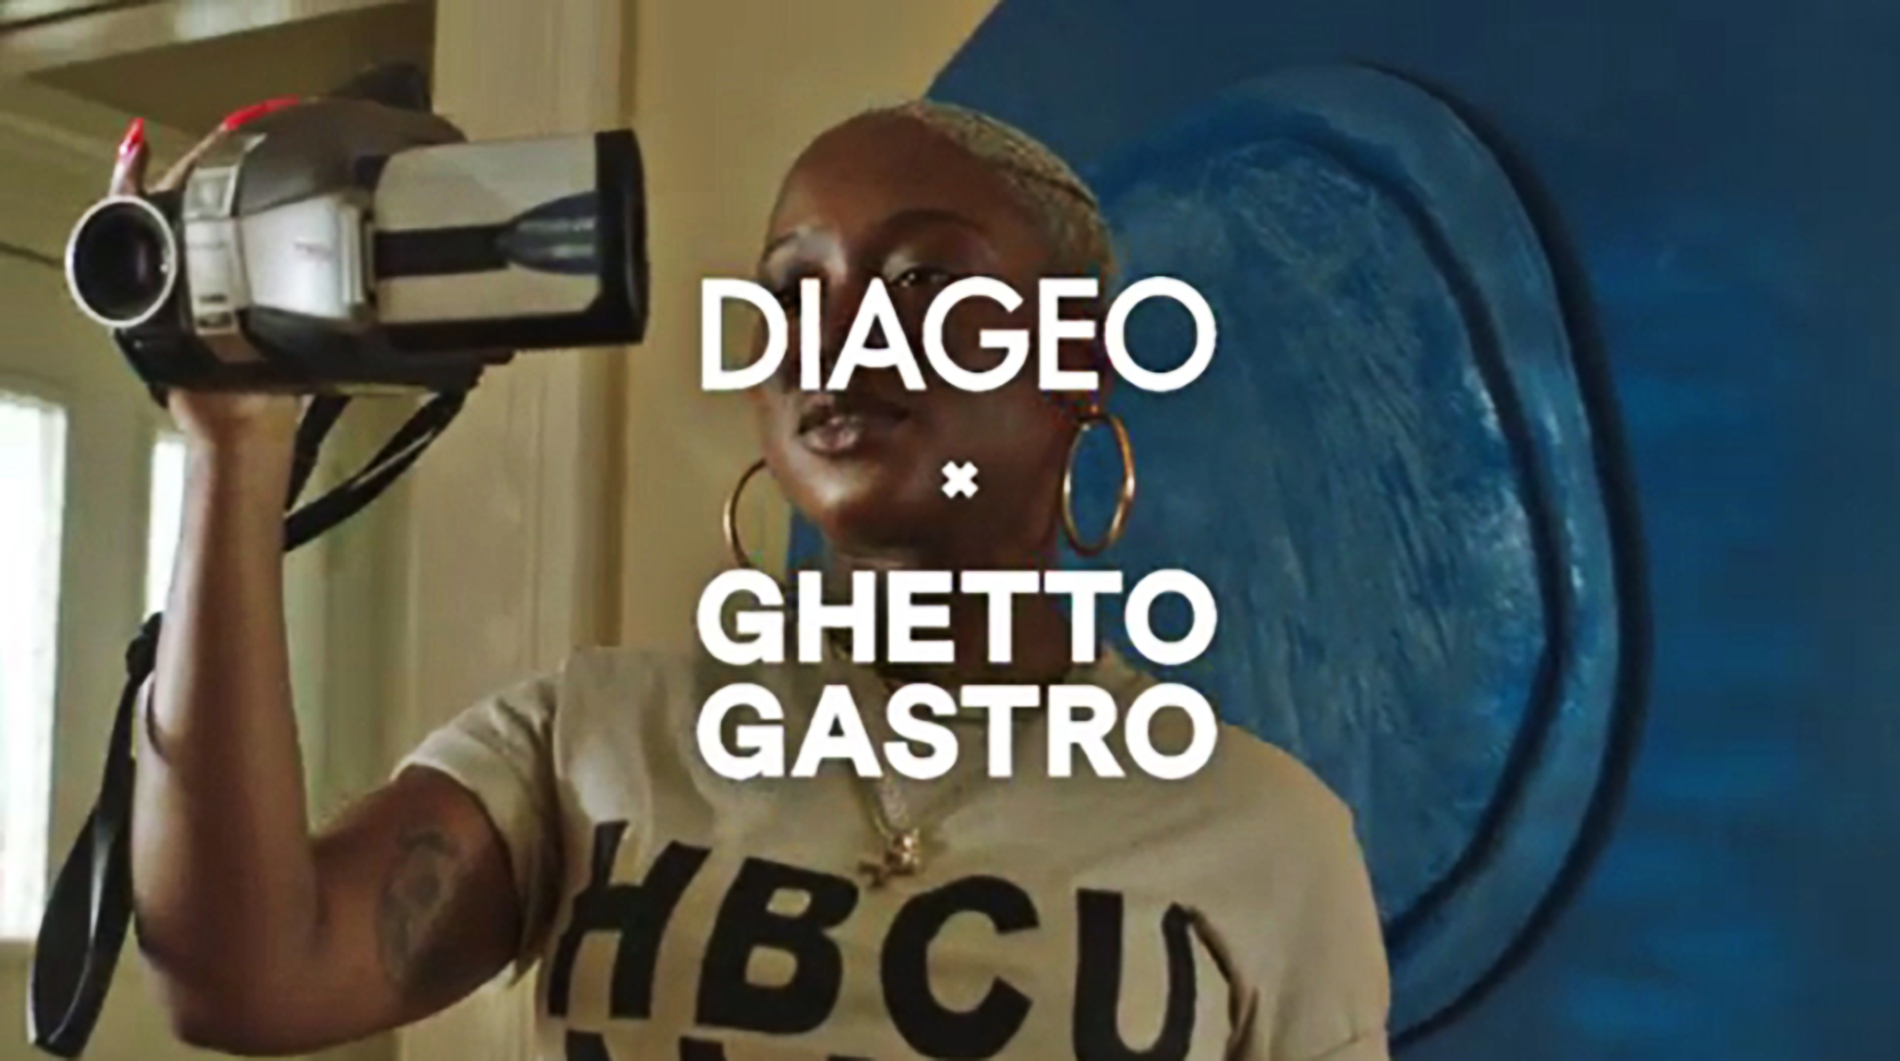 Video: DIAGEO x Ghetto Gastro